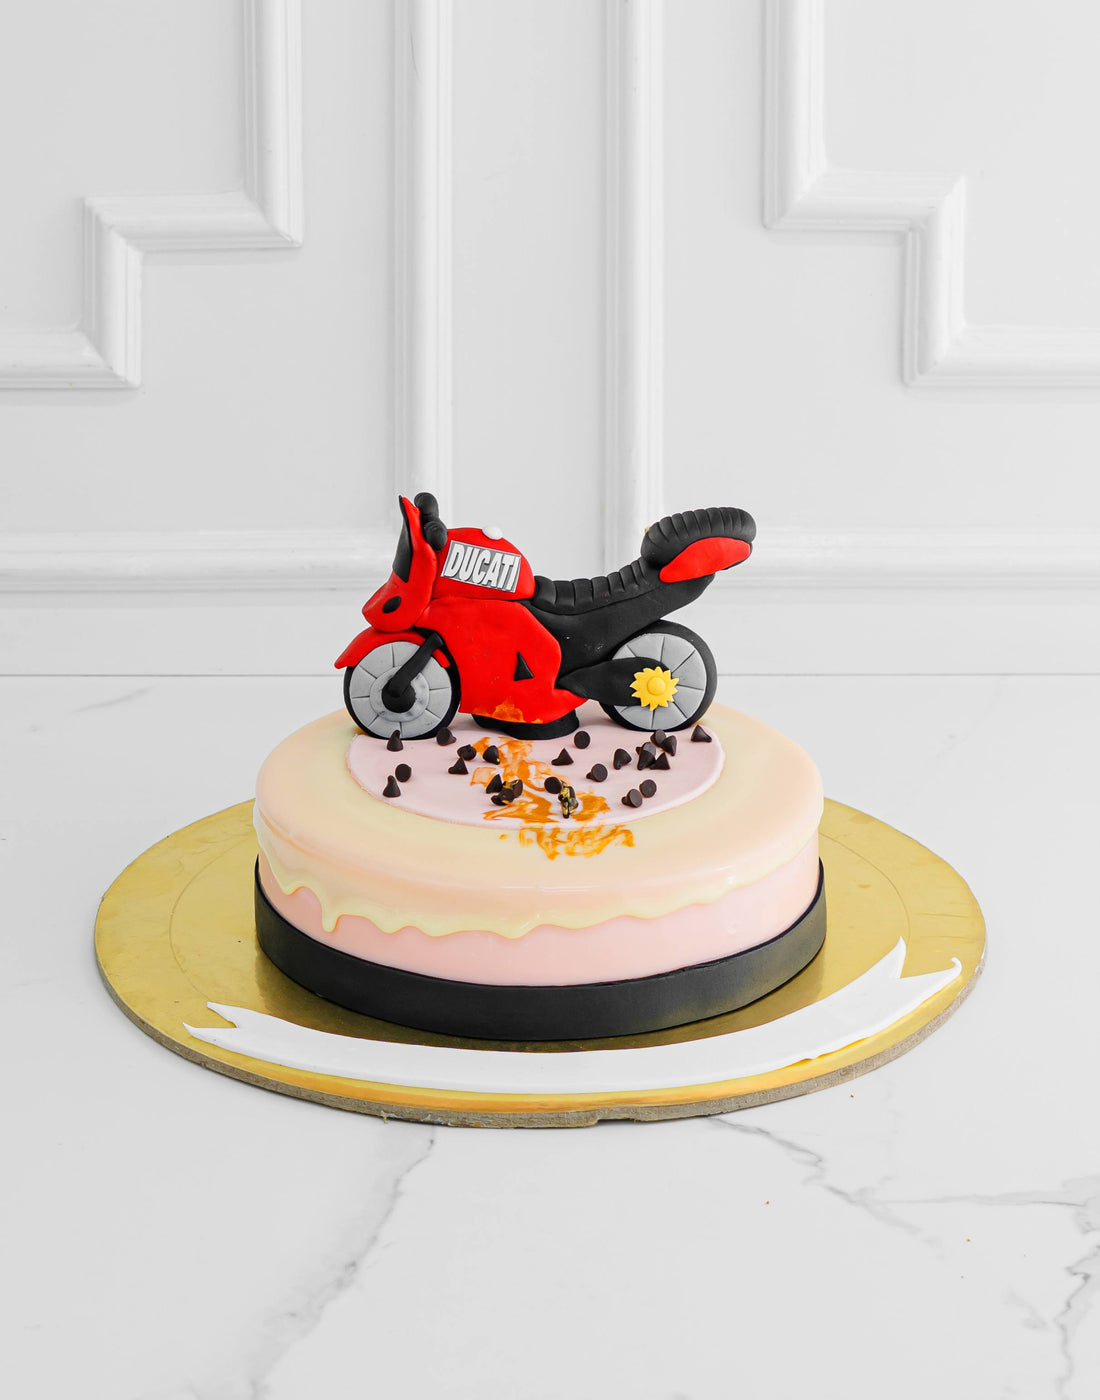 Ducati Theme Cake